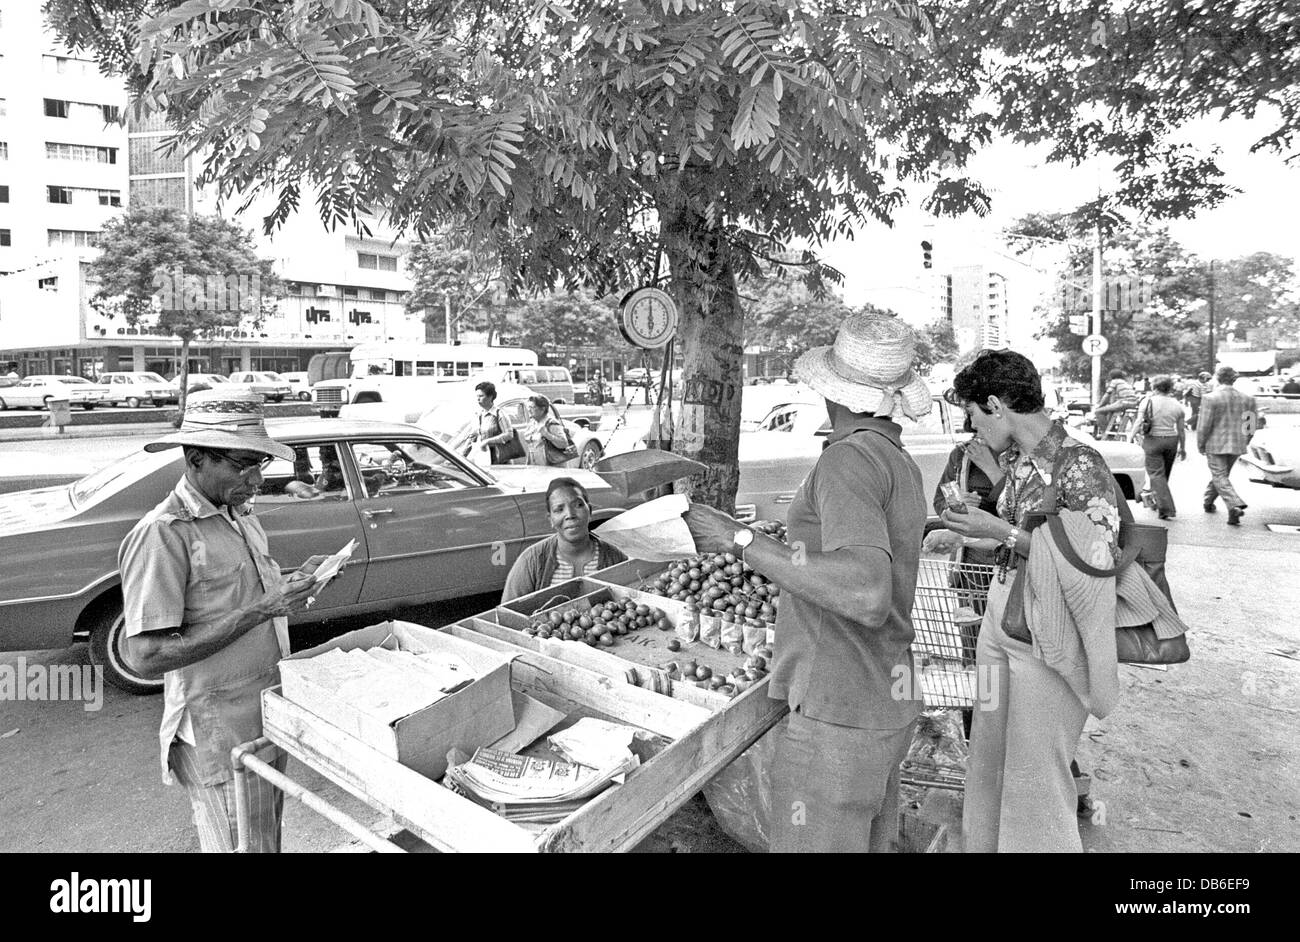 Caracas Venezuela Straßenszenen in den 1970er Jahren zeigen Menschen Autos Architektur Märkten. Stockfoto